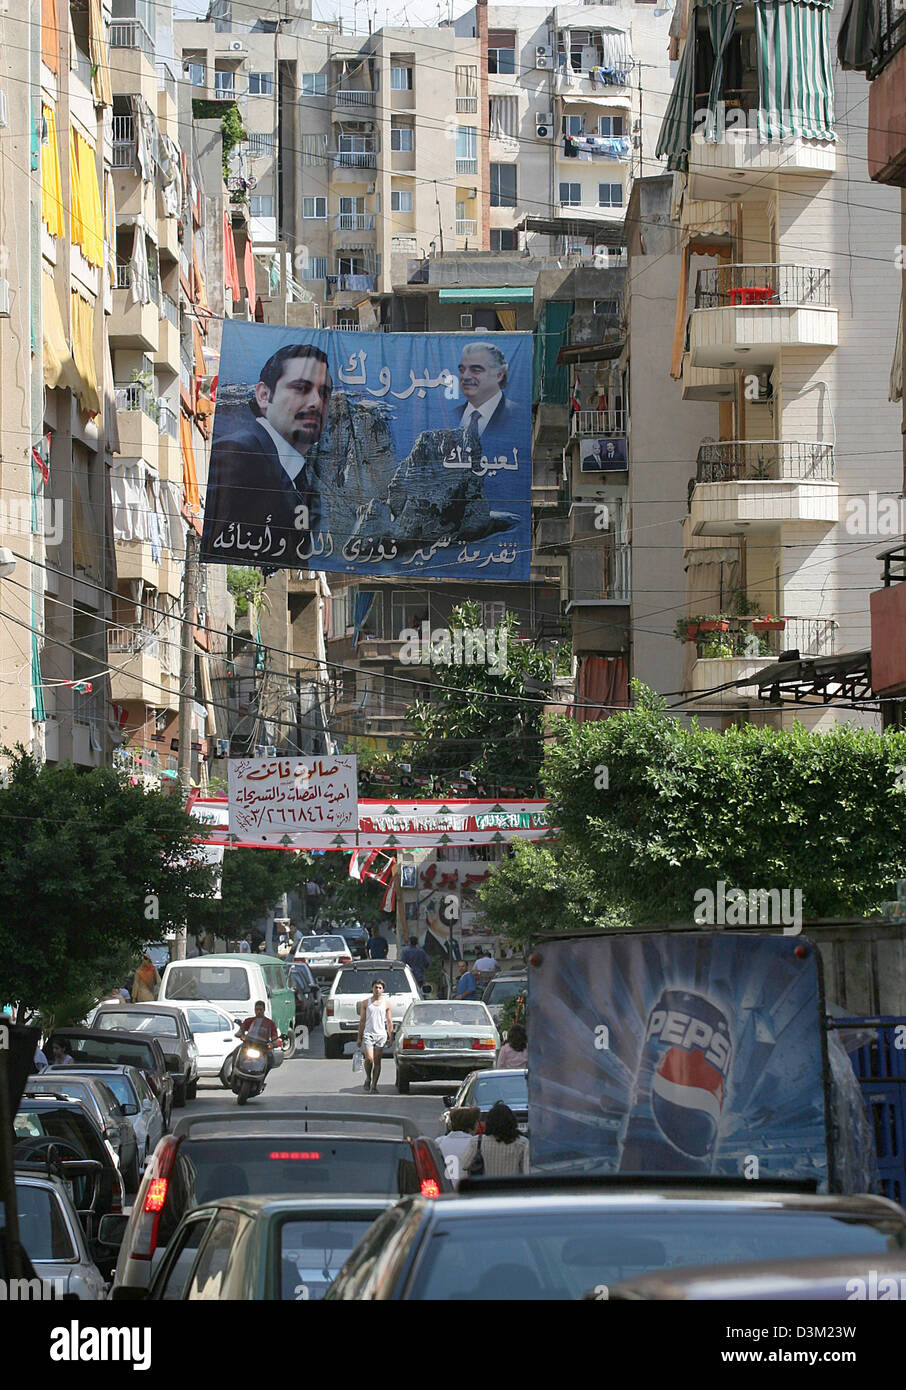 (Dpa) - La imagen muestra una cartelera del político asesinado Rafik Hariri y su hijo Saad Hariri, en un barrio residencial en Beirut, Líbano, 01 de octubre de 2005. El ex primer ministro libanés Hariri y otras 20 personas fueron muertas en un atentado el 14 de febrero de 2005. Respecto a un informe de la ONU publicado el 21 de octubre de 2005, fuerzas de seguridad sirias estuvieron implicados en el asesinato Foto de stock